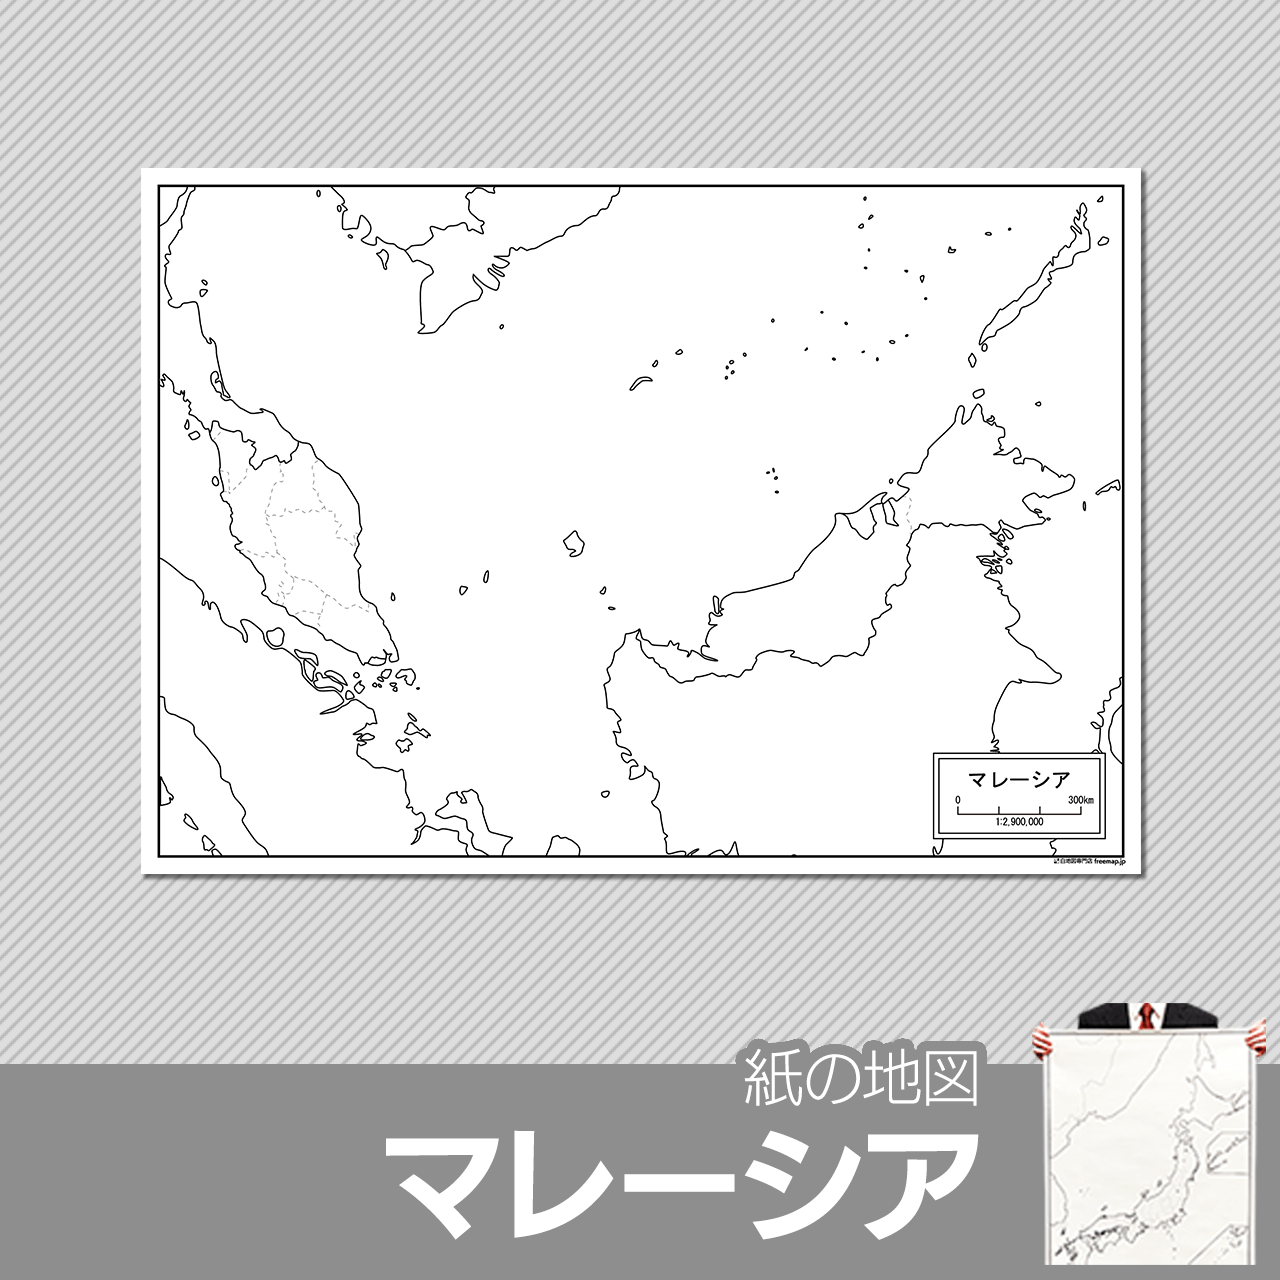 マレーシアの紙の白地図のサムネイル